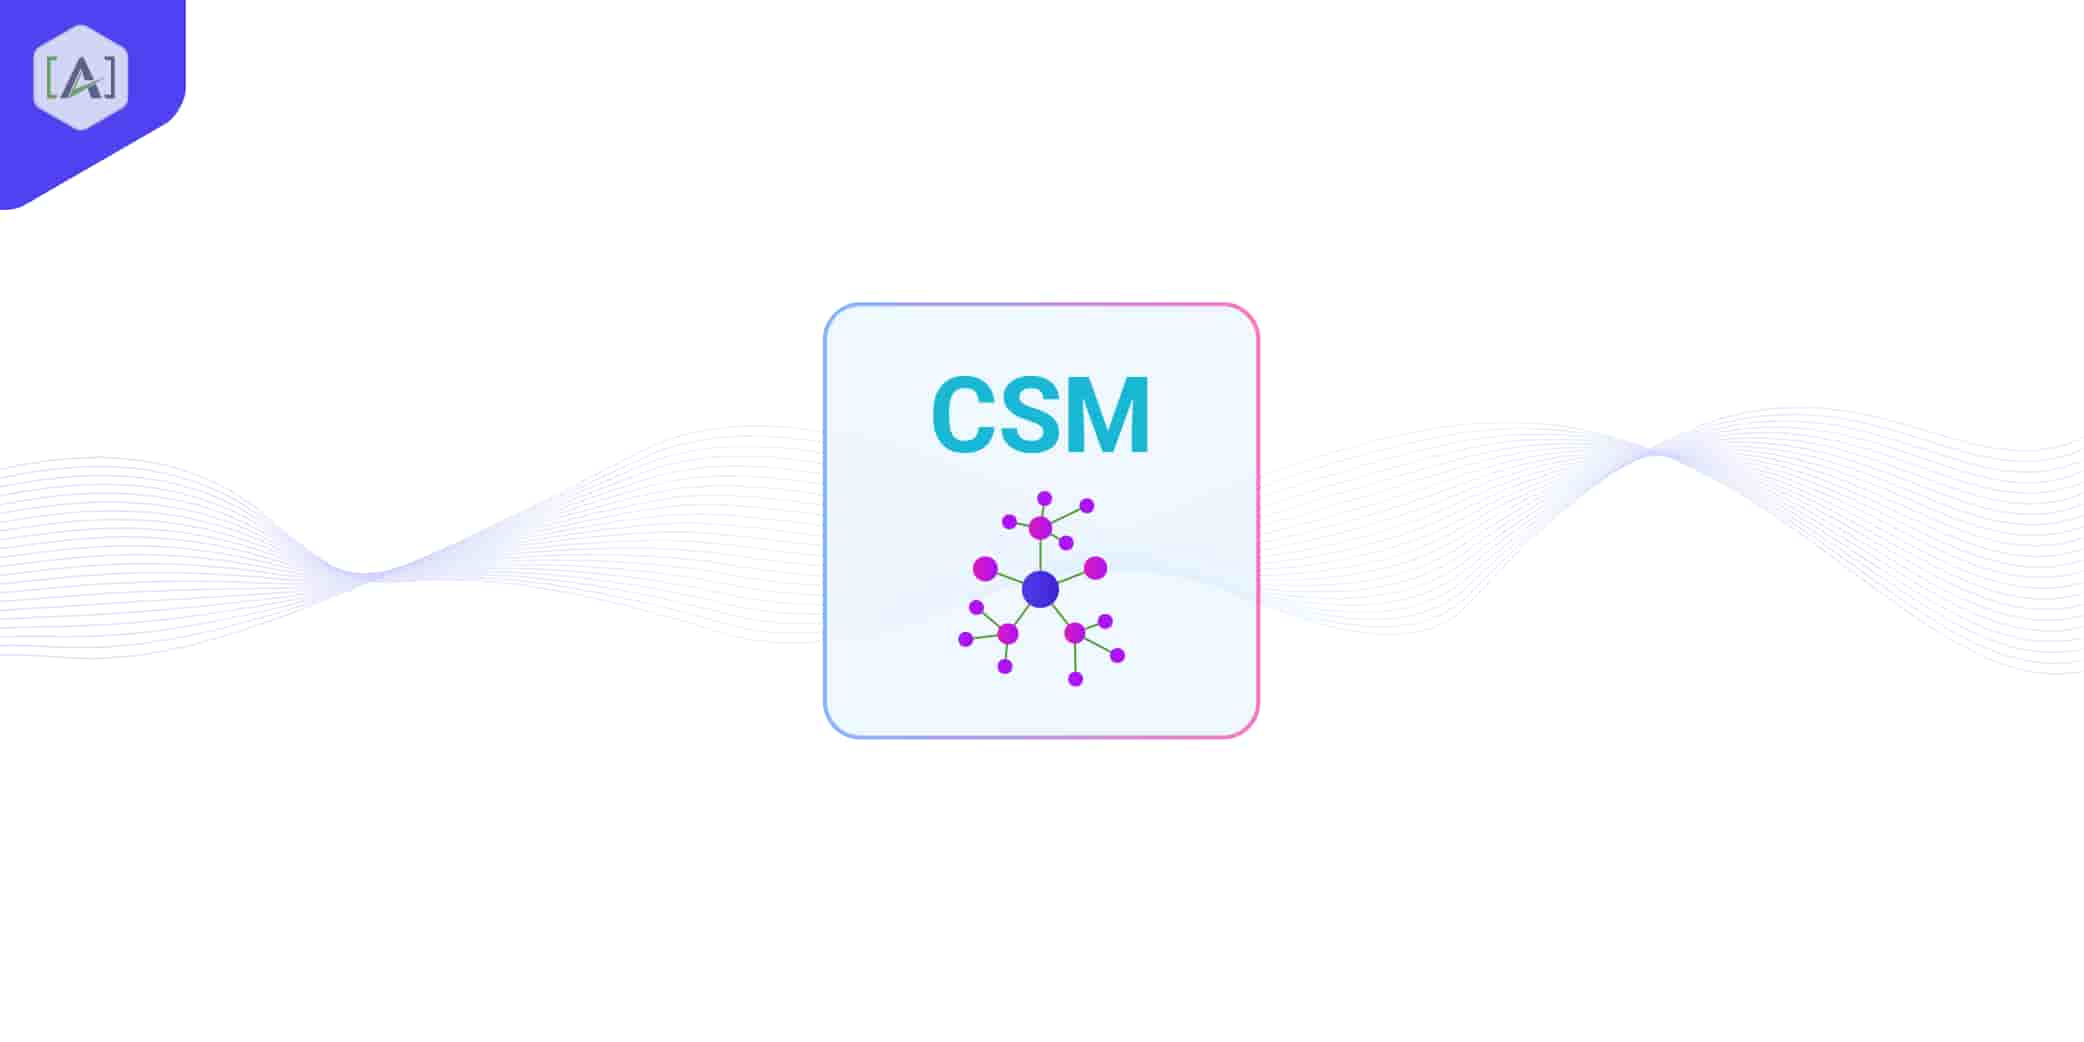 Core Semantic Model®  (CSM) 